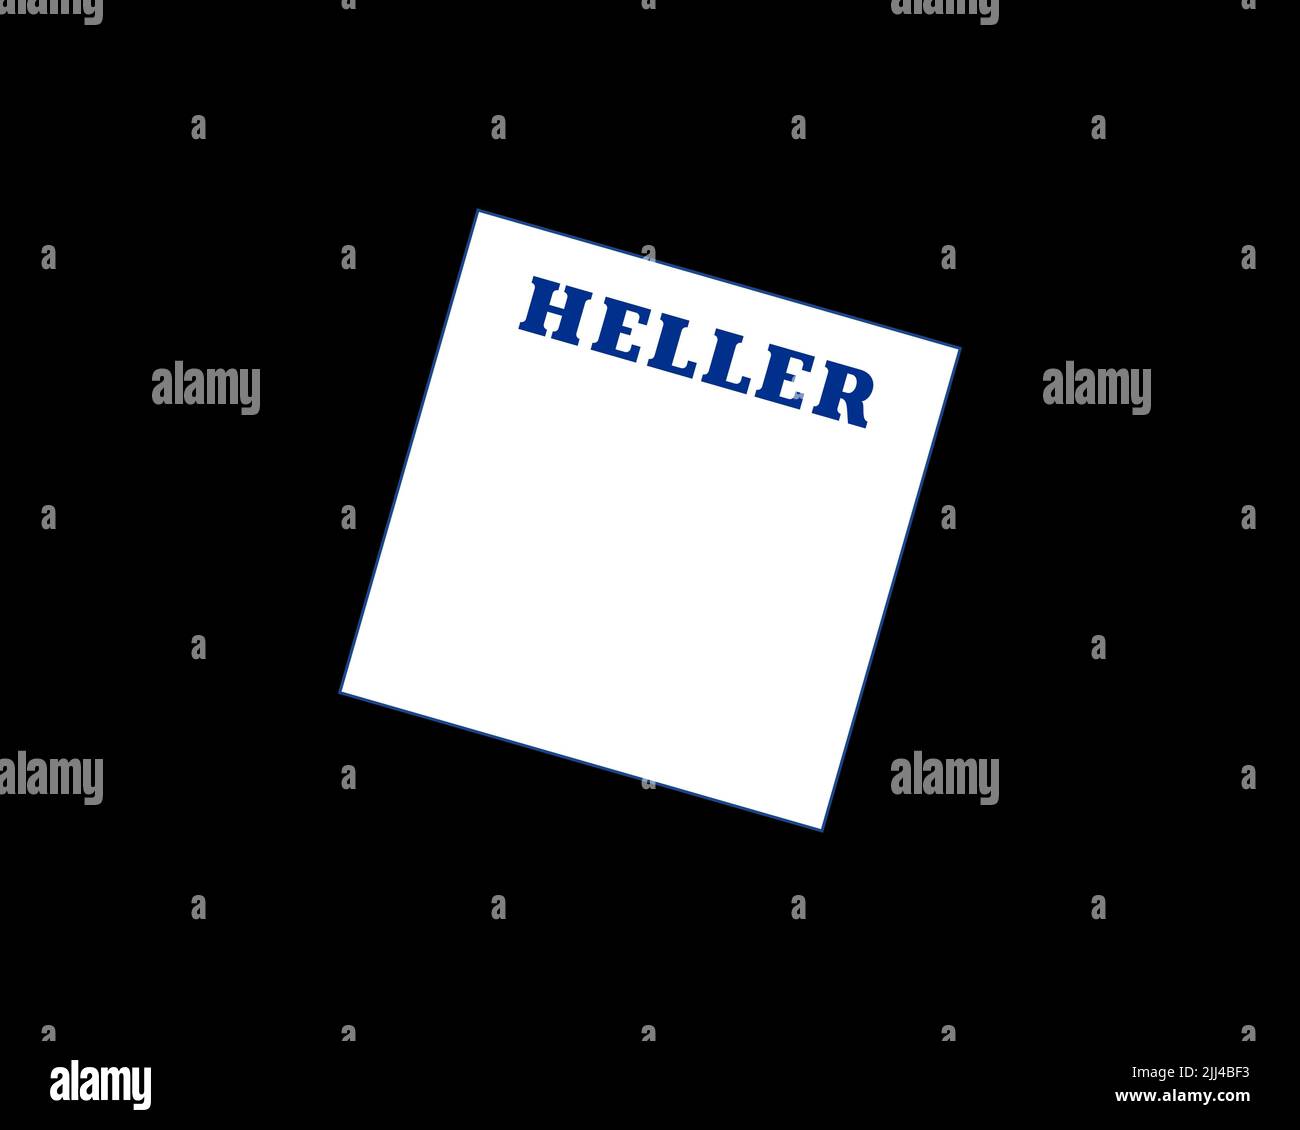 Gebr. Heller, gedrehtes Logo, Schwarzer Hintergrund B Stock Photo